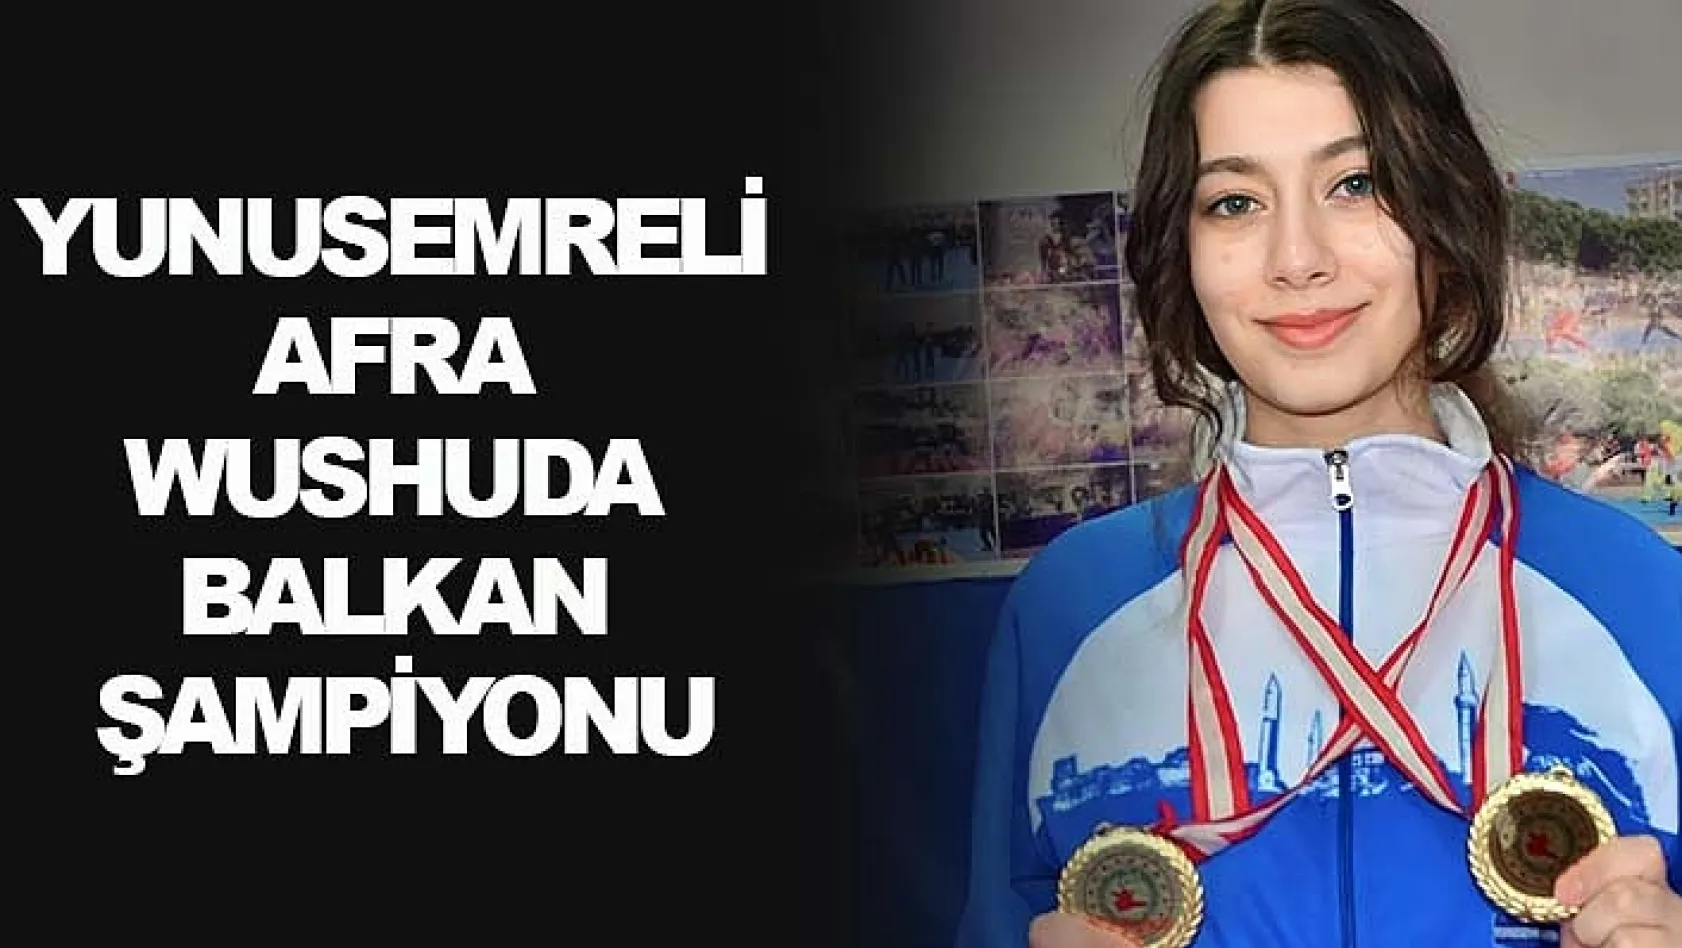 Yunusemreli Afra Wushuda Balkan Şampiyonu